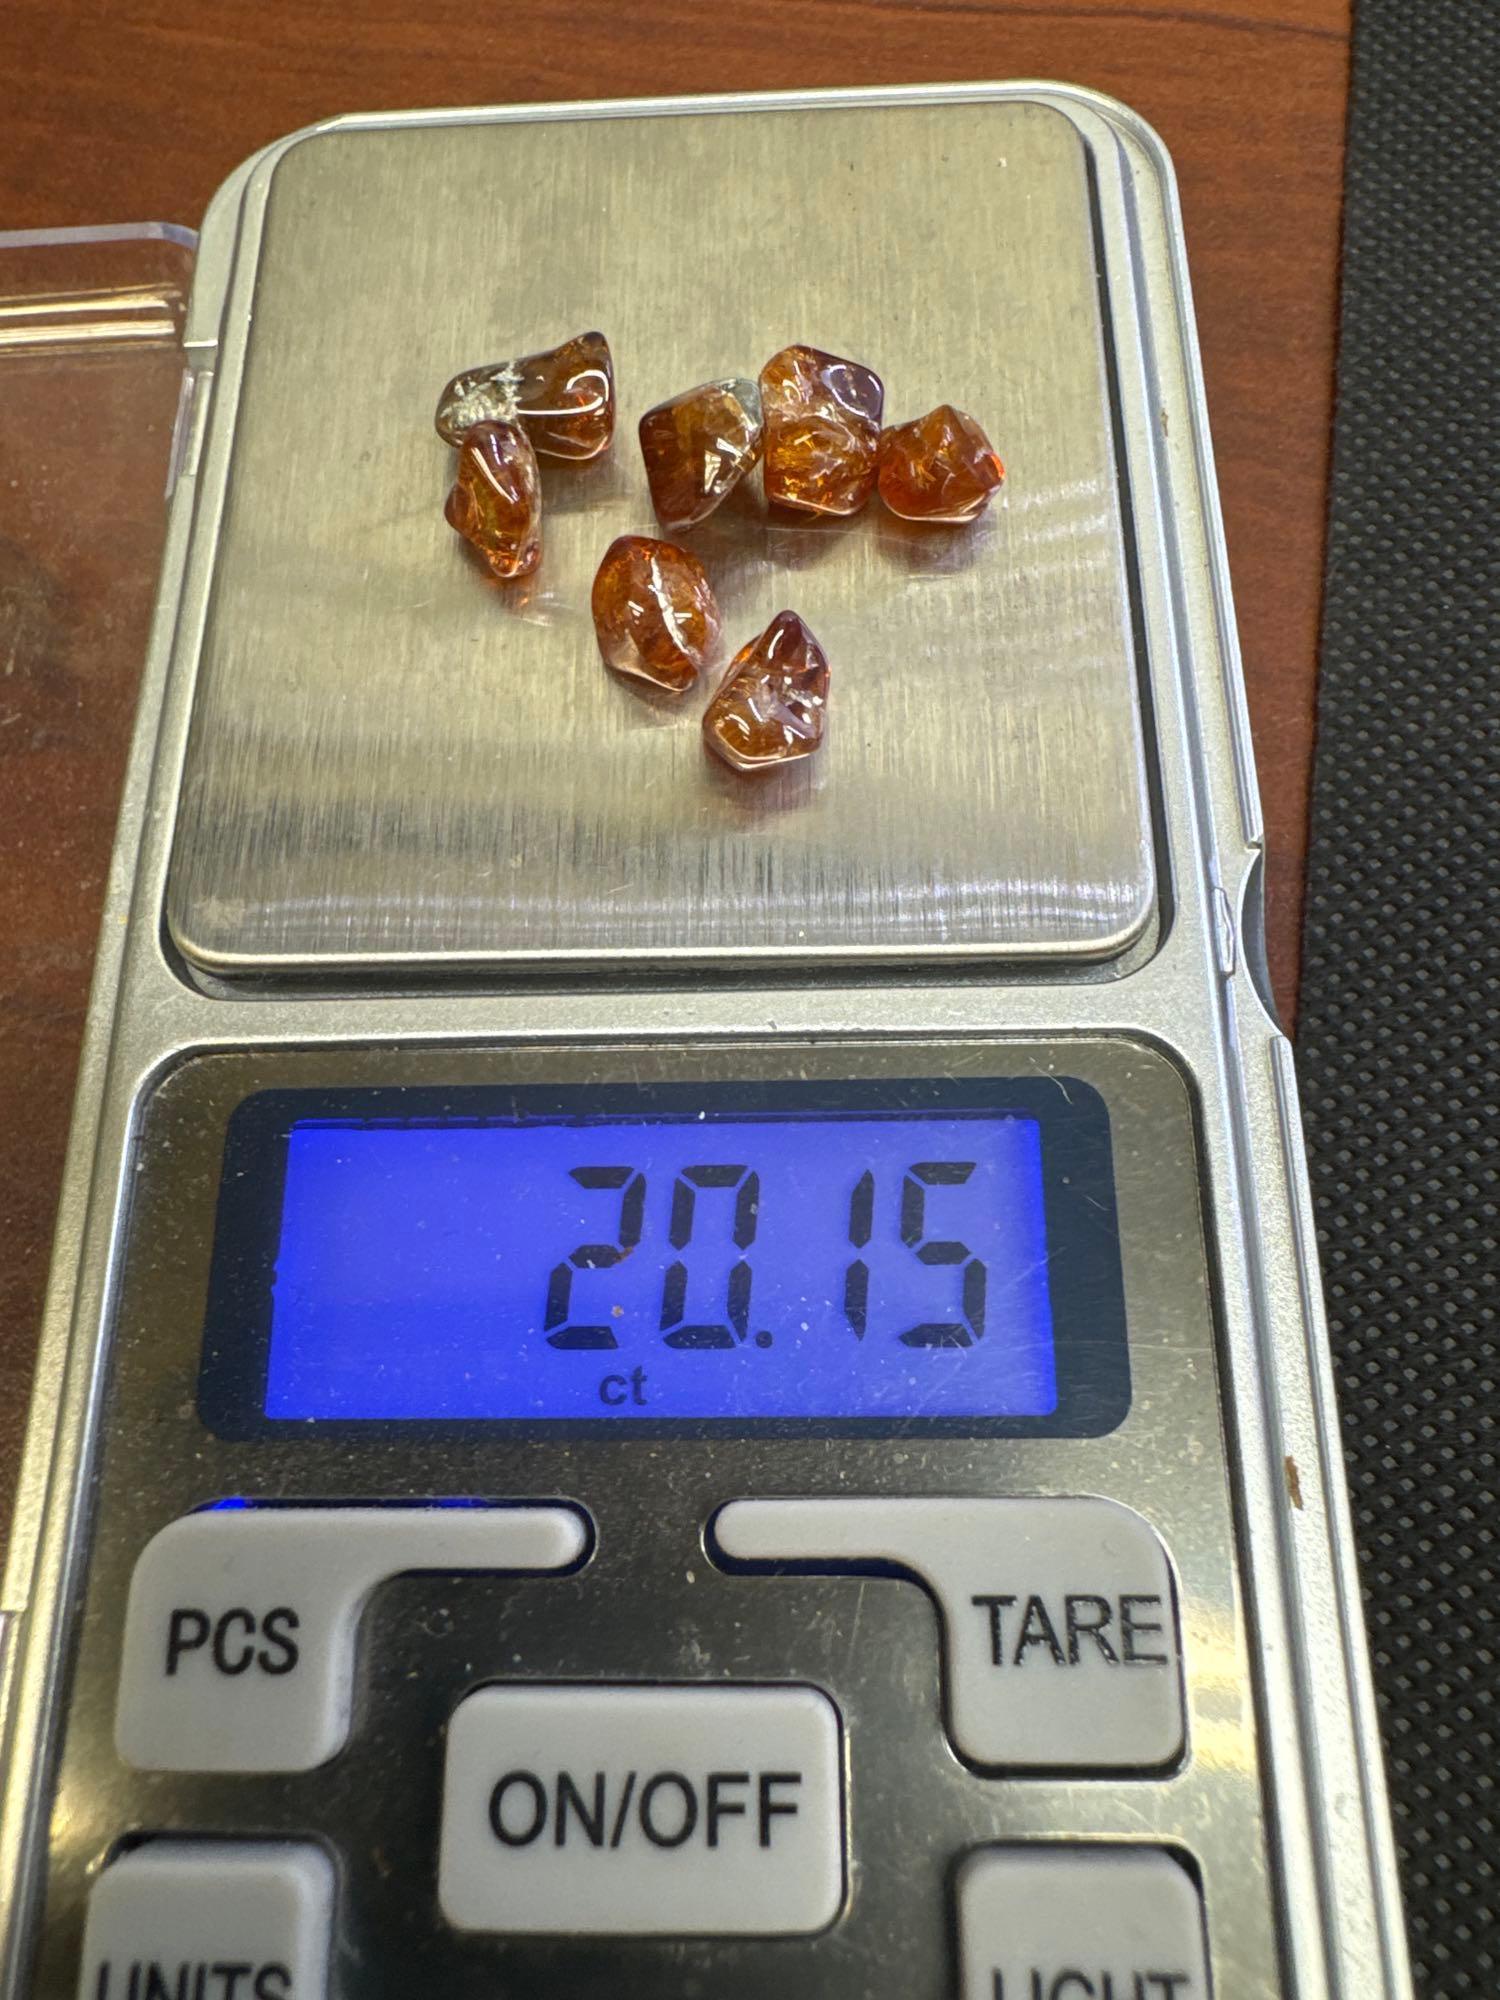 Orange Garnet Gemstones 20.51 Ct